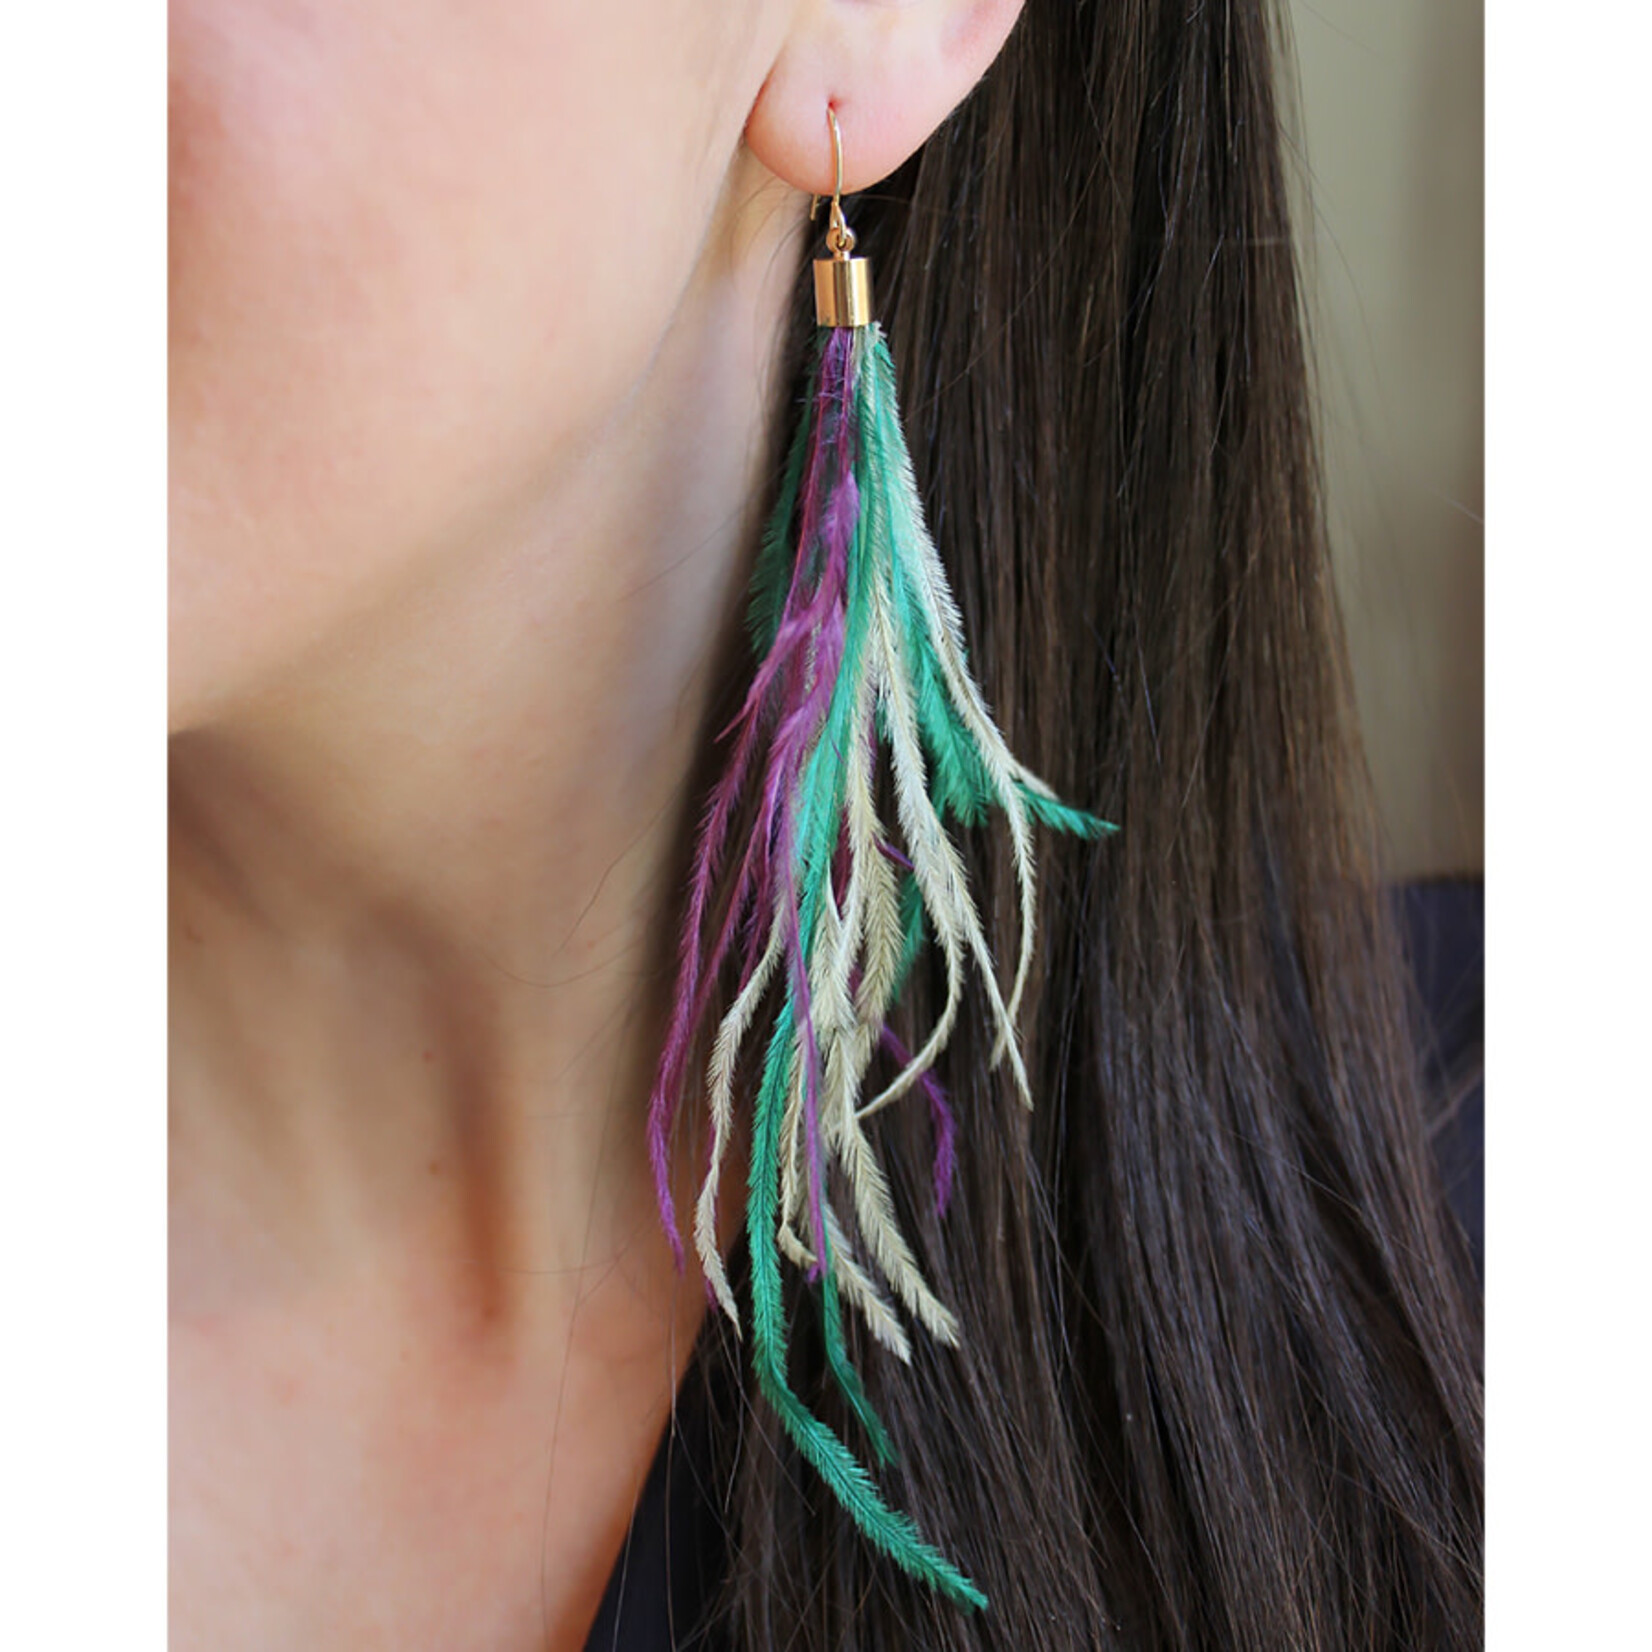 Laalee Jewelry Mardi Gras Feather Earrings